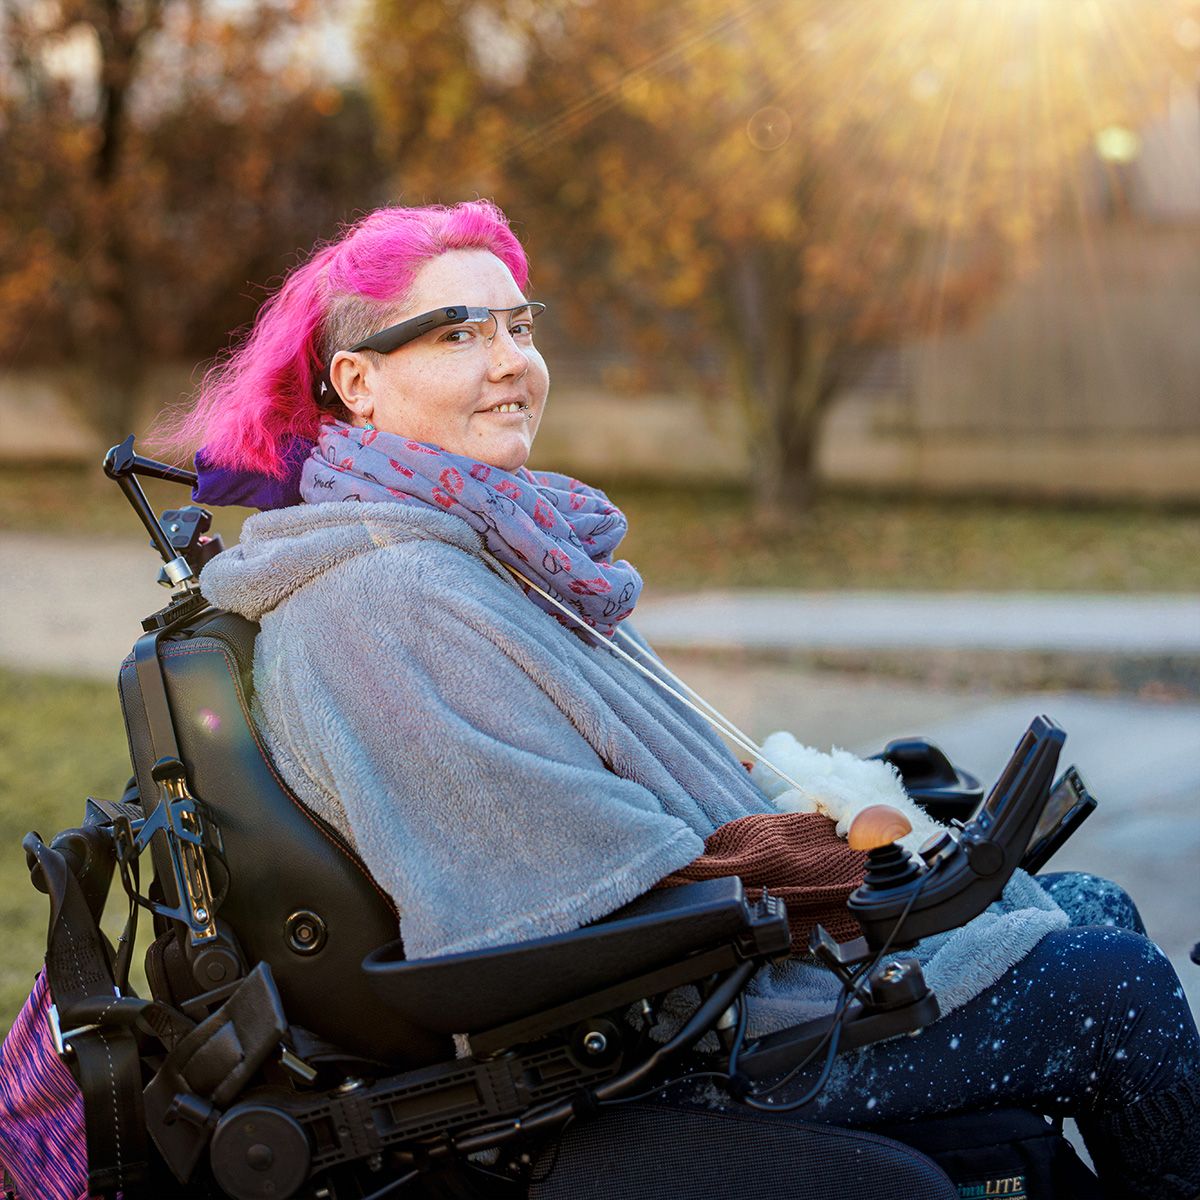 Munevo-Nutzerin mit rosa Haaren die lächelnd in ihrem Rollstuhl sitzt